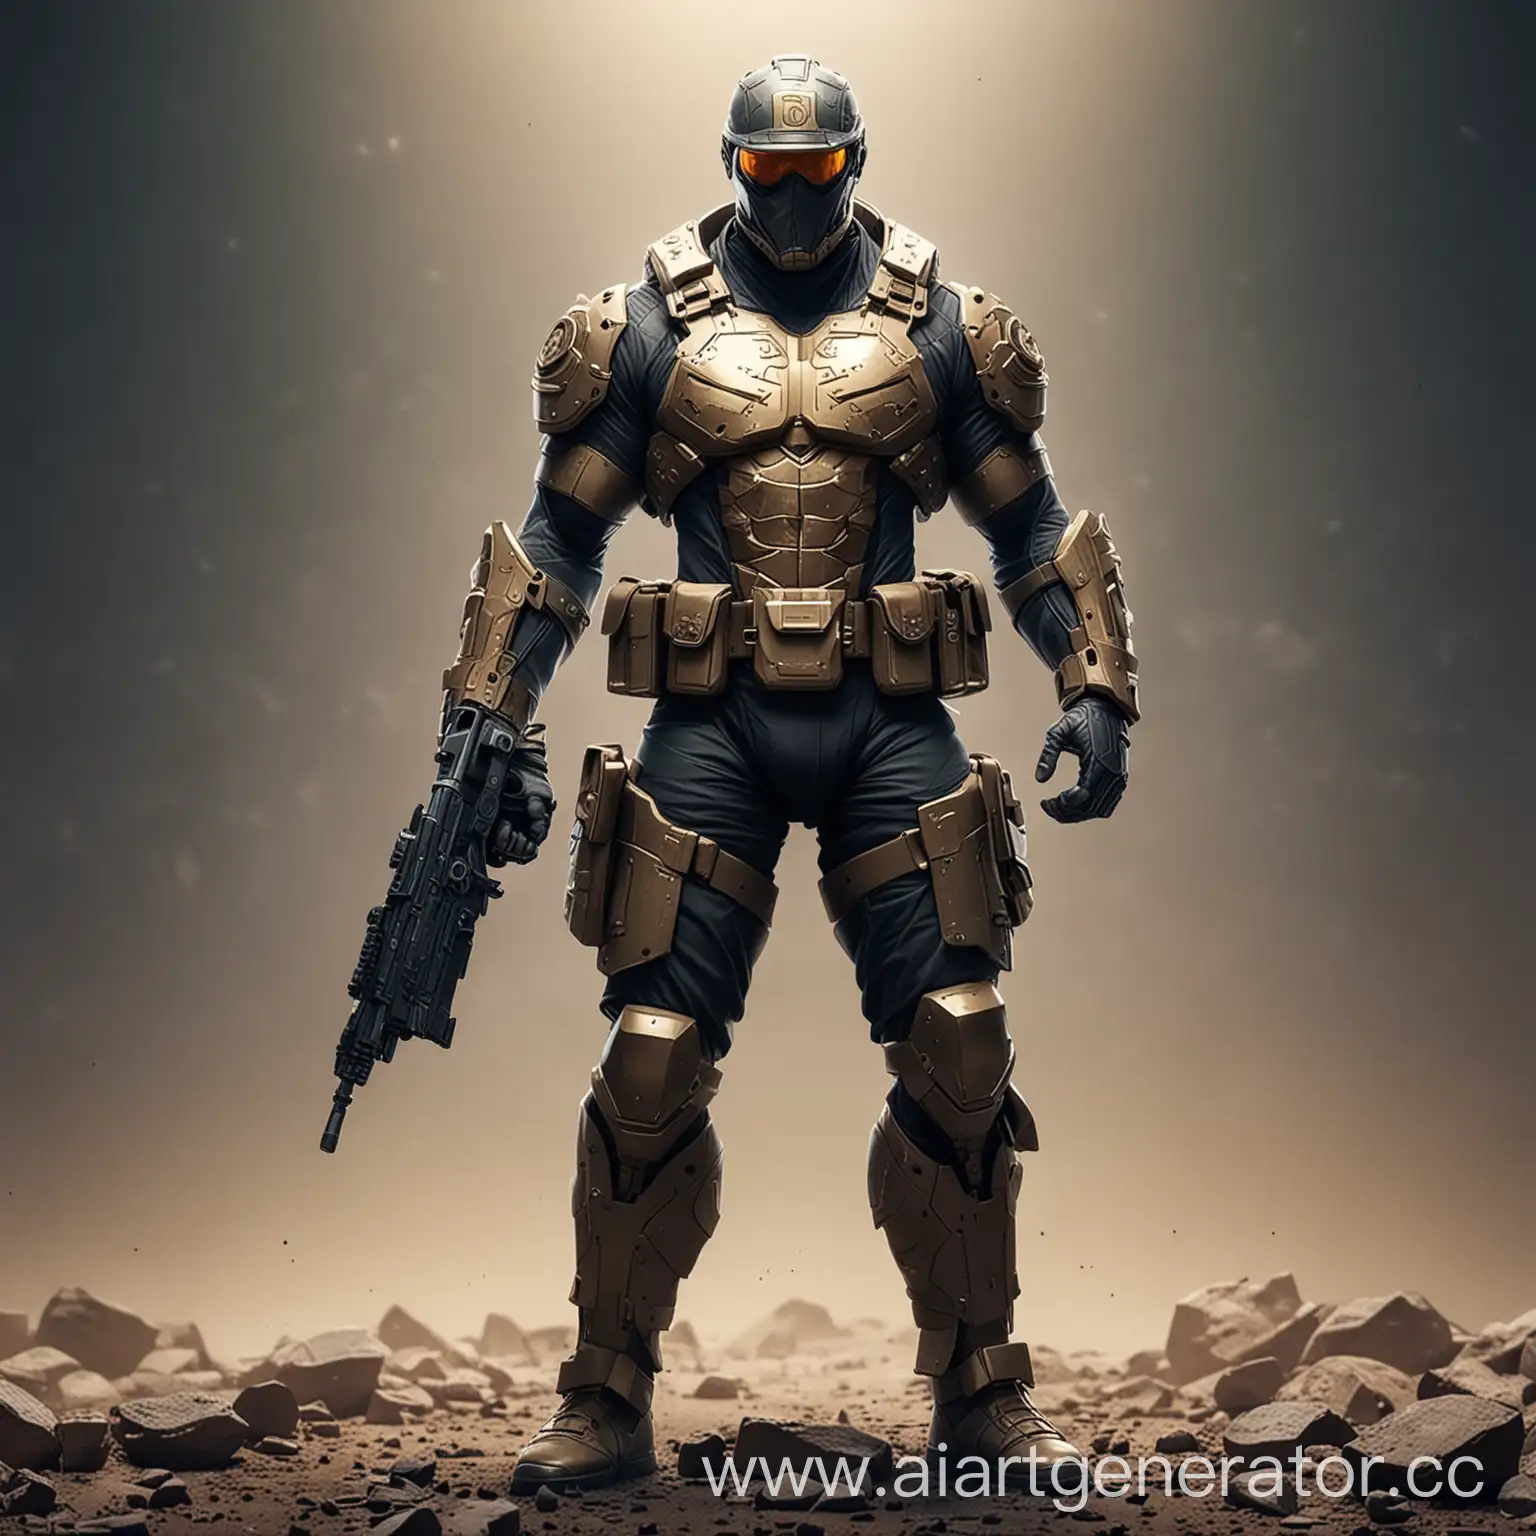 Futuristic-Crypto-Soldier-in-Battle-Armor